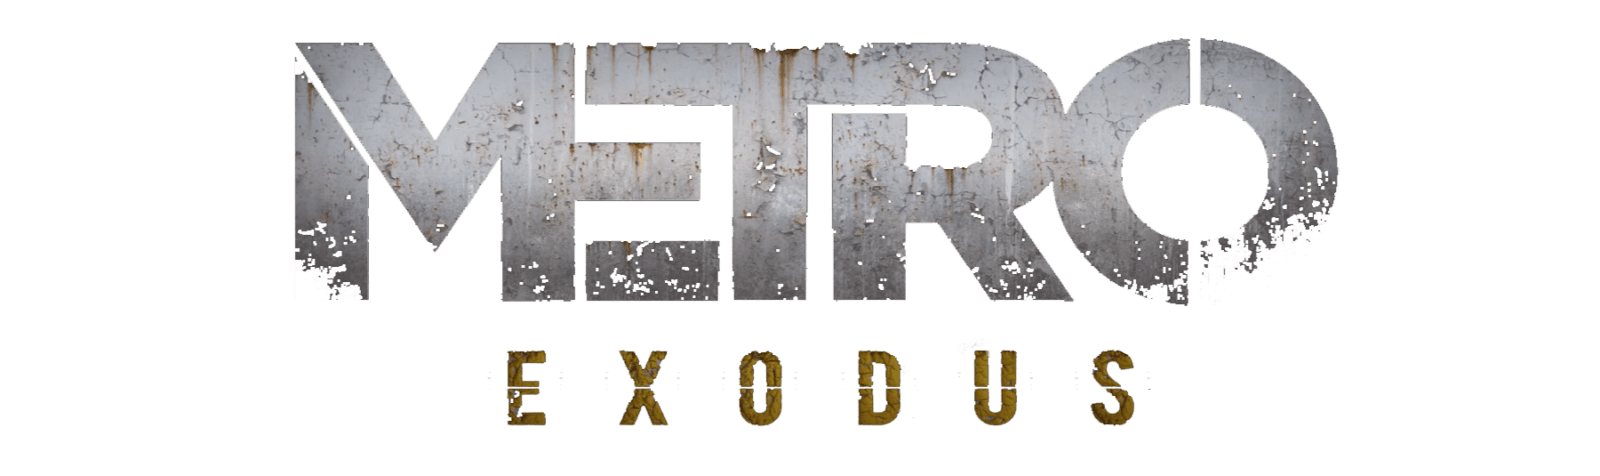 Metro Exodus Logo PNG Image